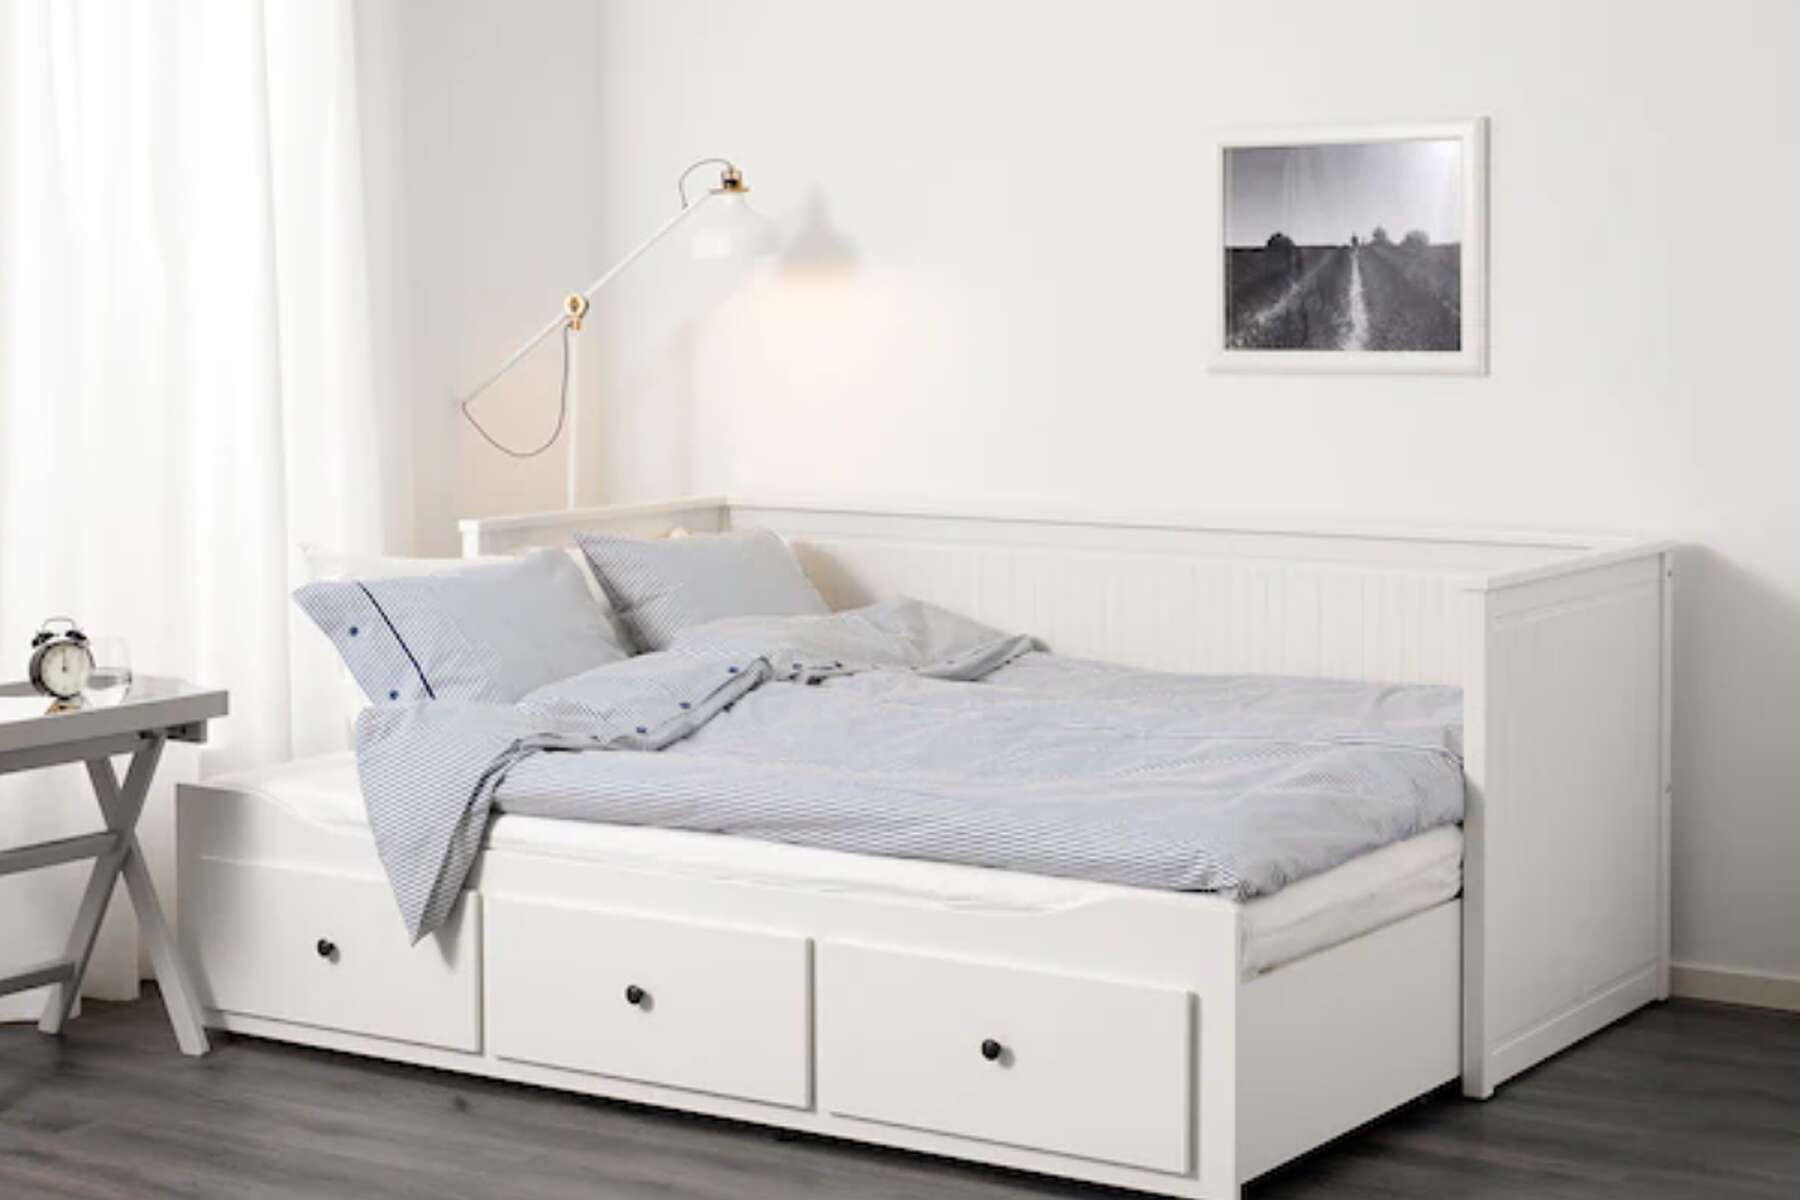 Ikea Houston Best Bedroom Furniture, Dark Gray King Size Headboard Ikea